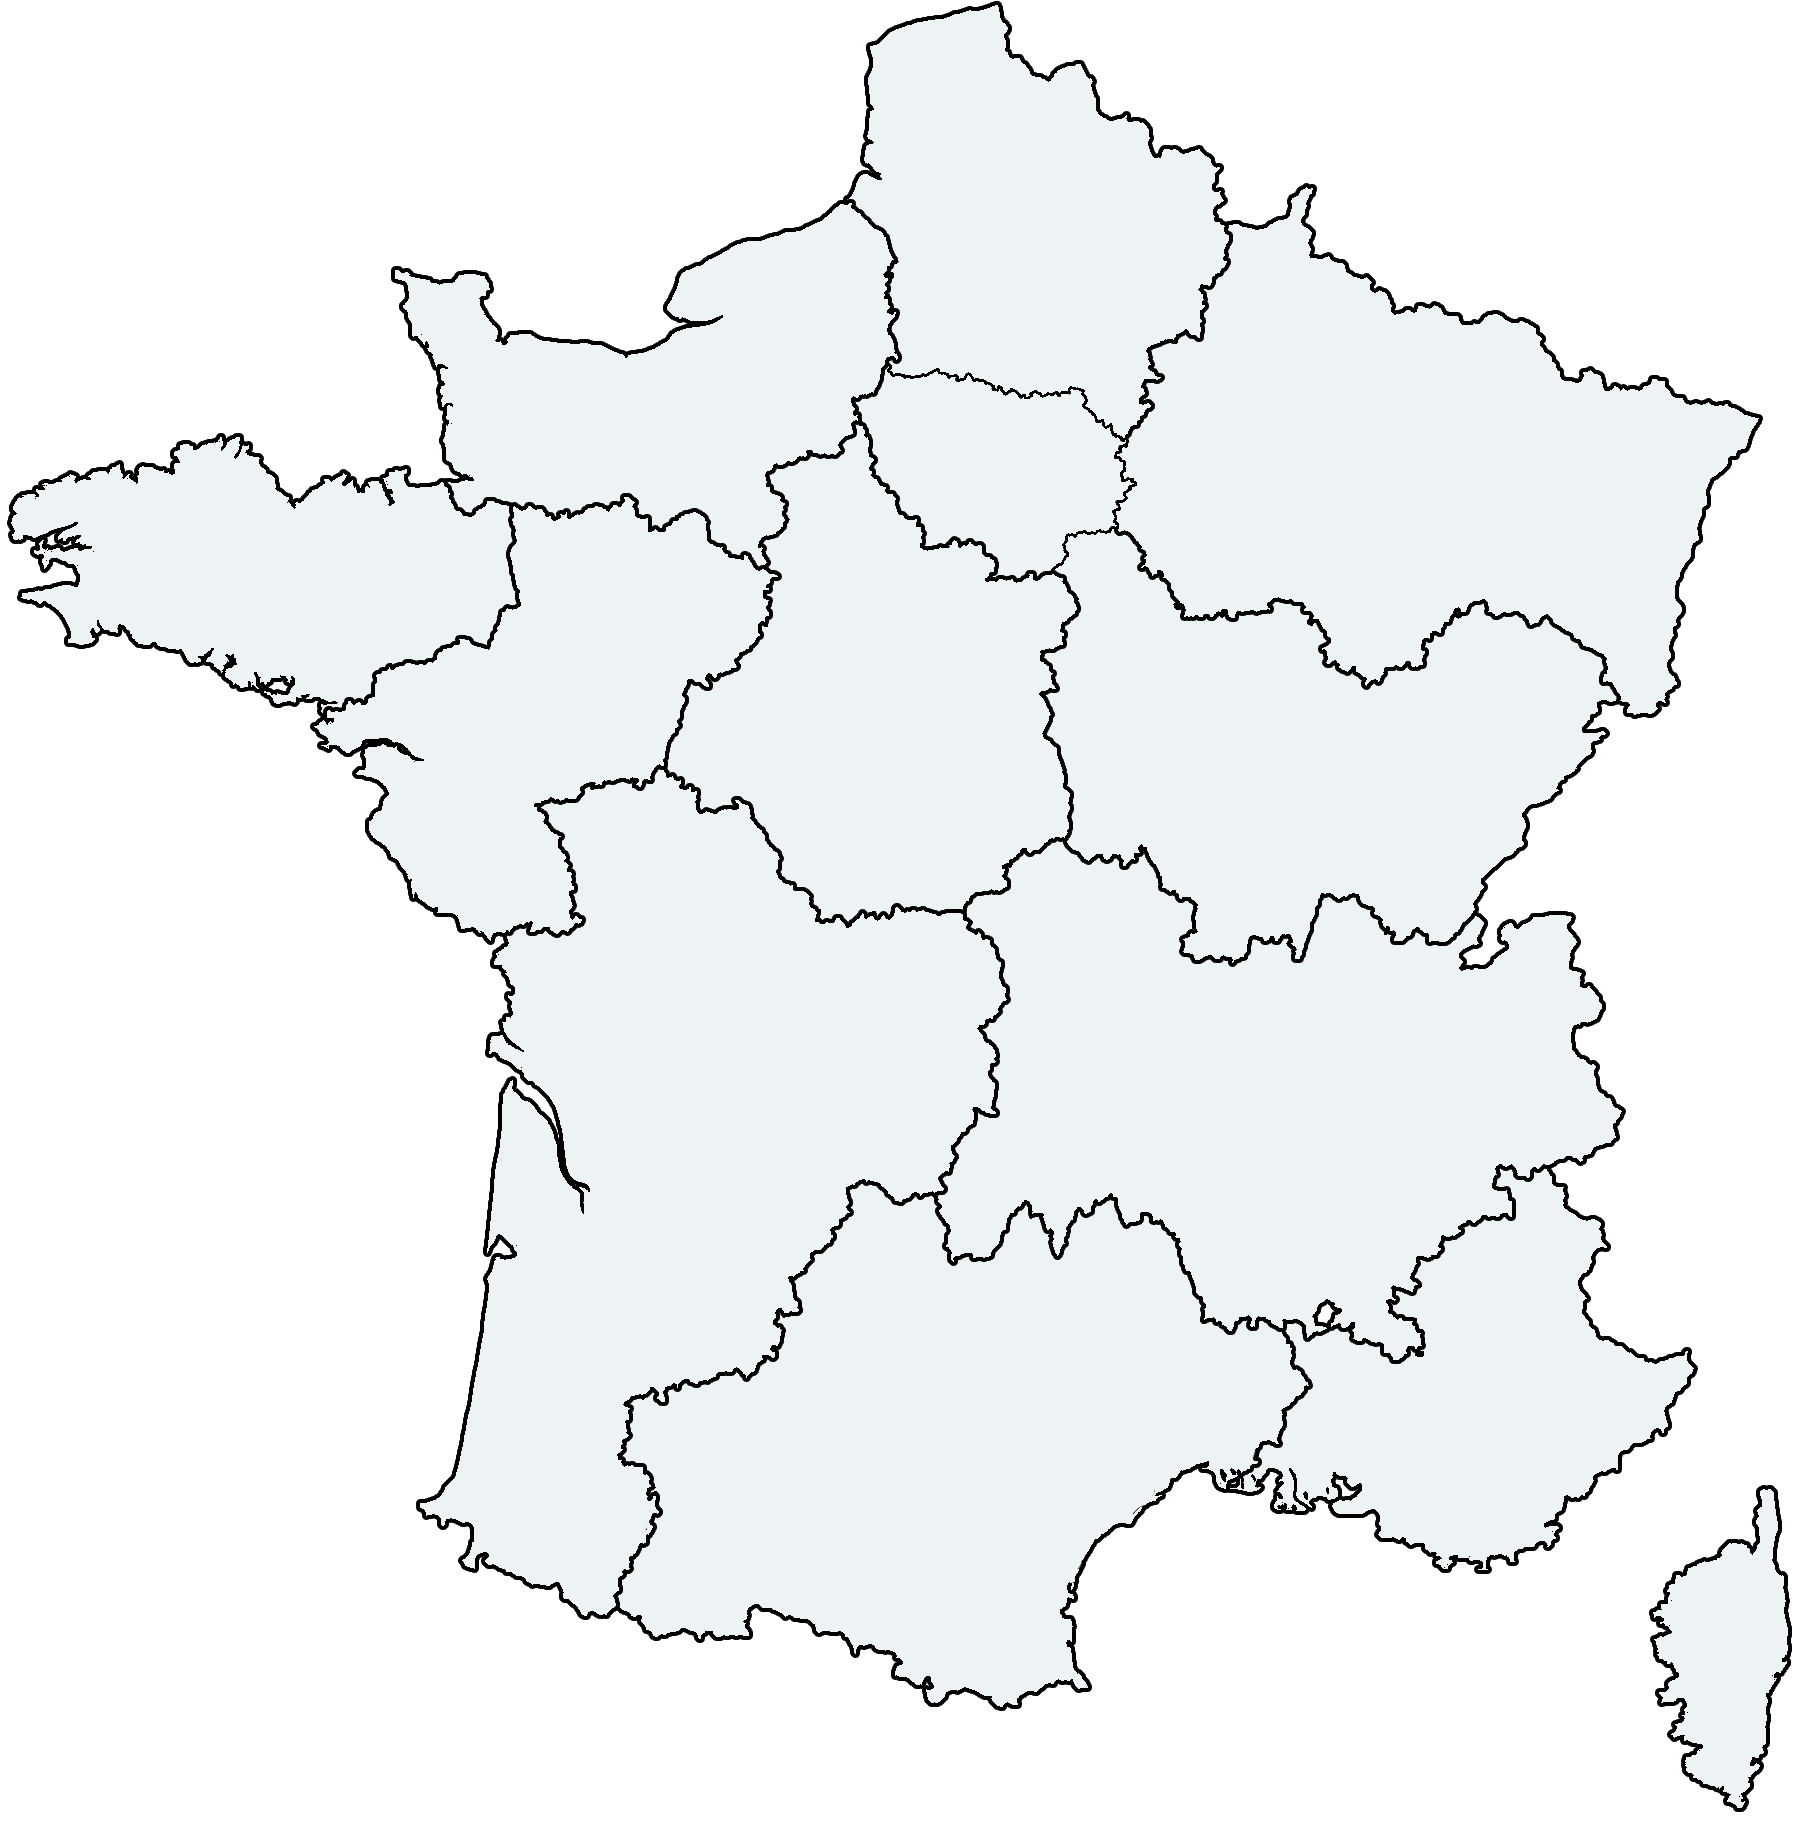 Cartes Régions France